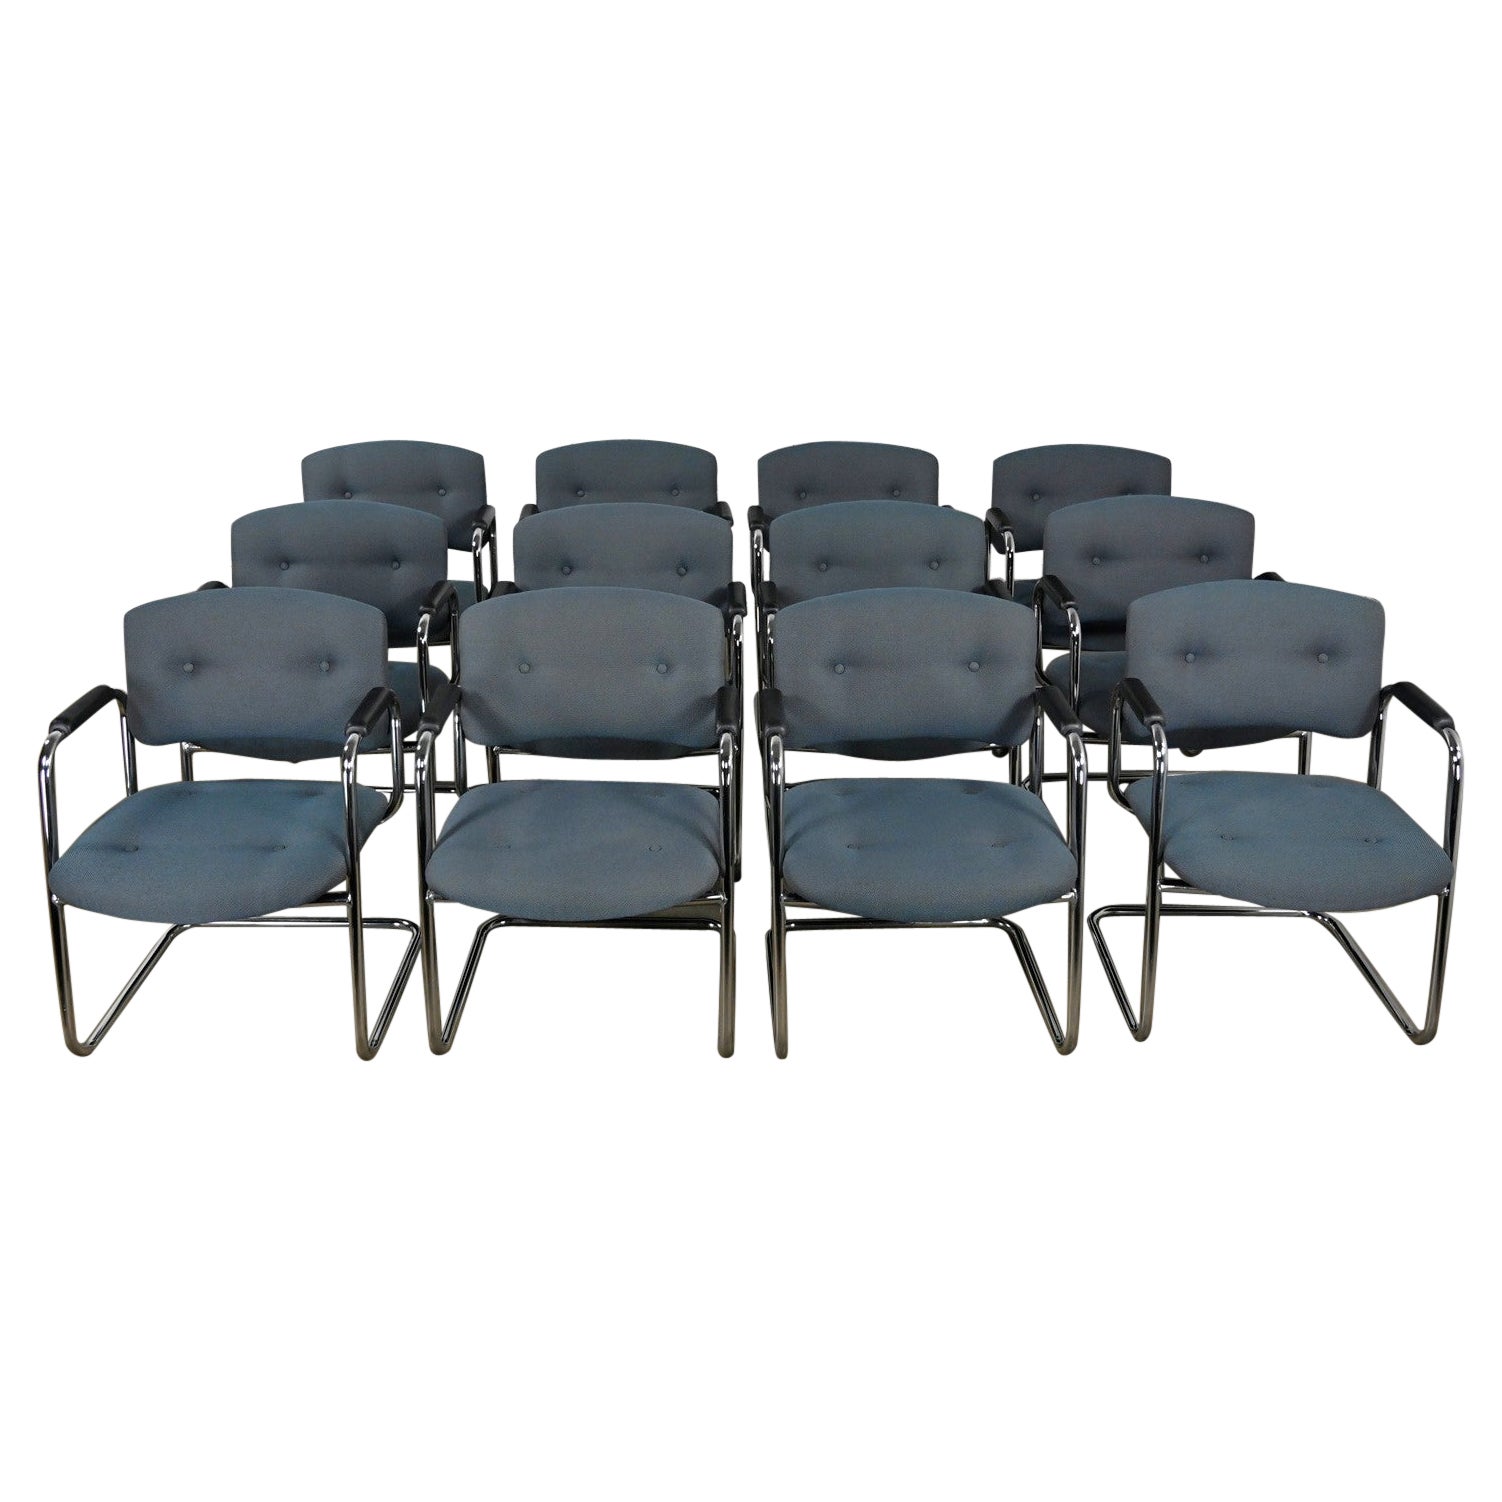 Fin du 20e siècle, chaises cantilever grises et chromées Style Steelcase Ensemble de 12